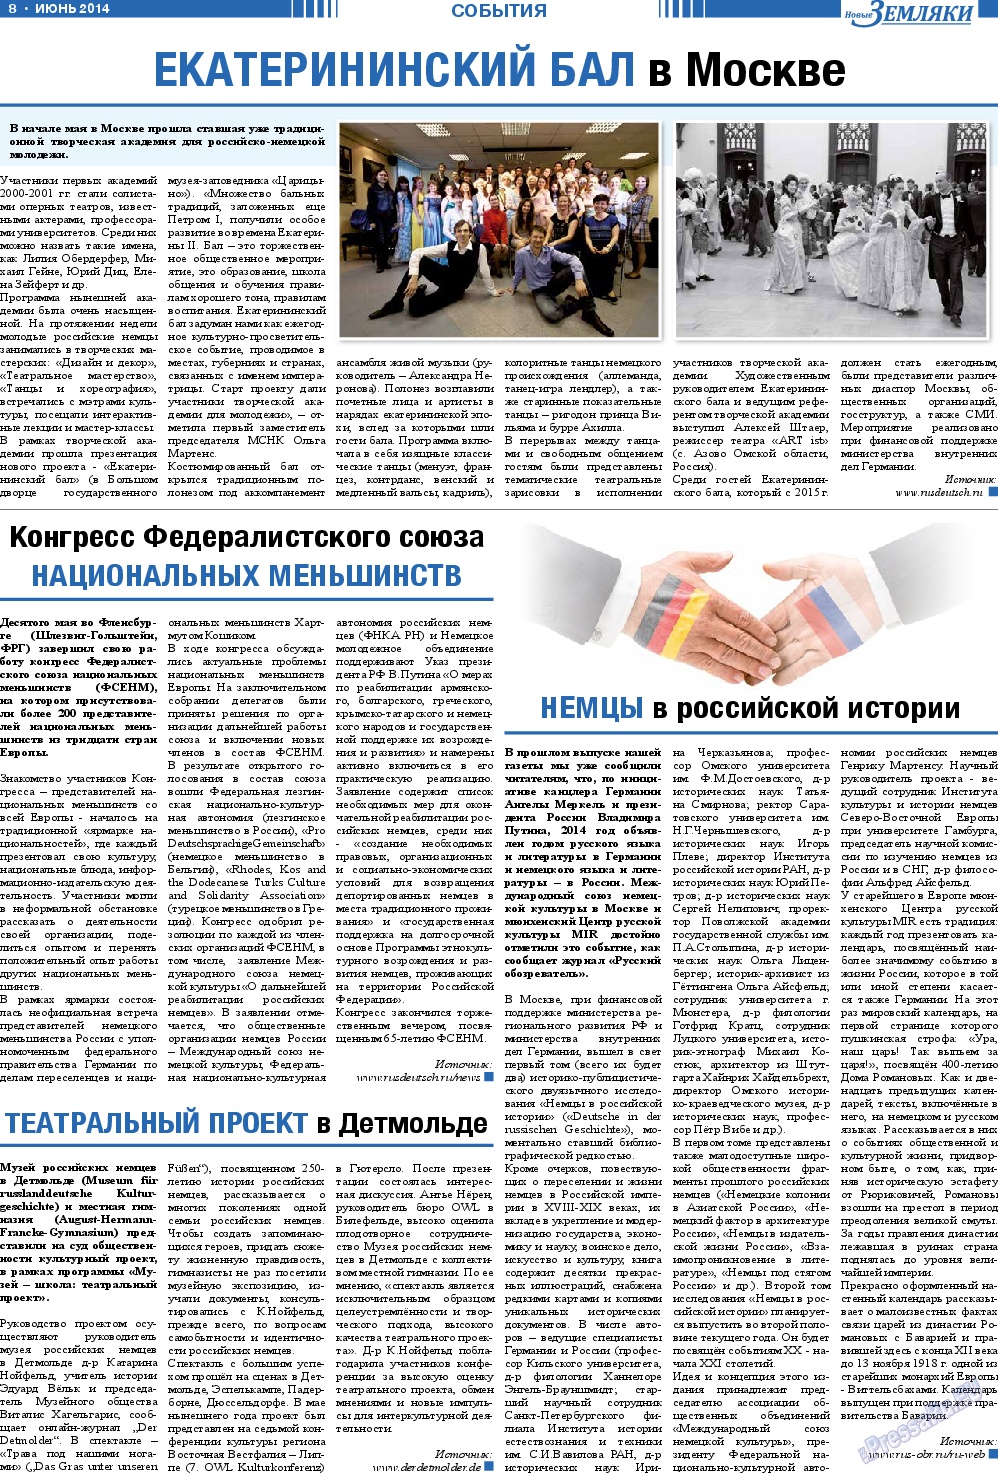 Новые Земляки (газета). 2014 год, номер 6, стр. 8